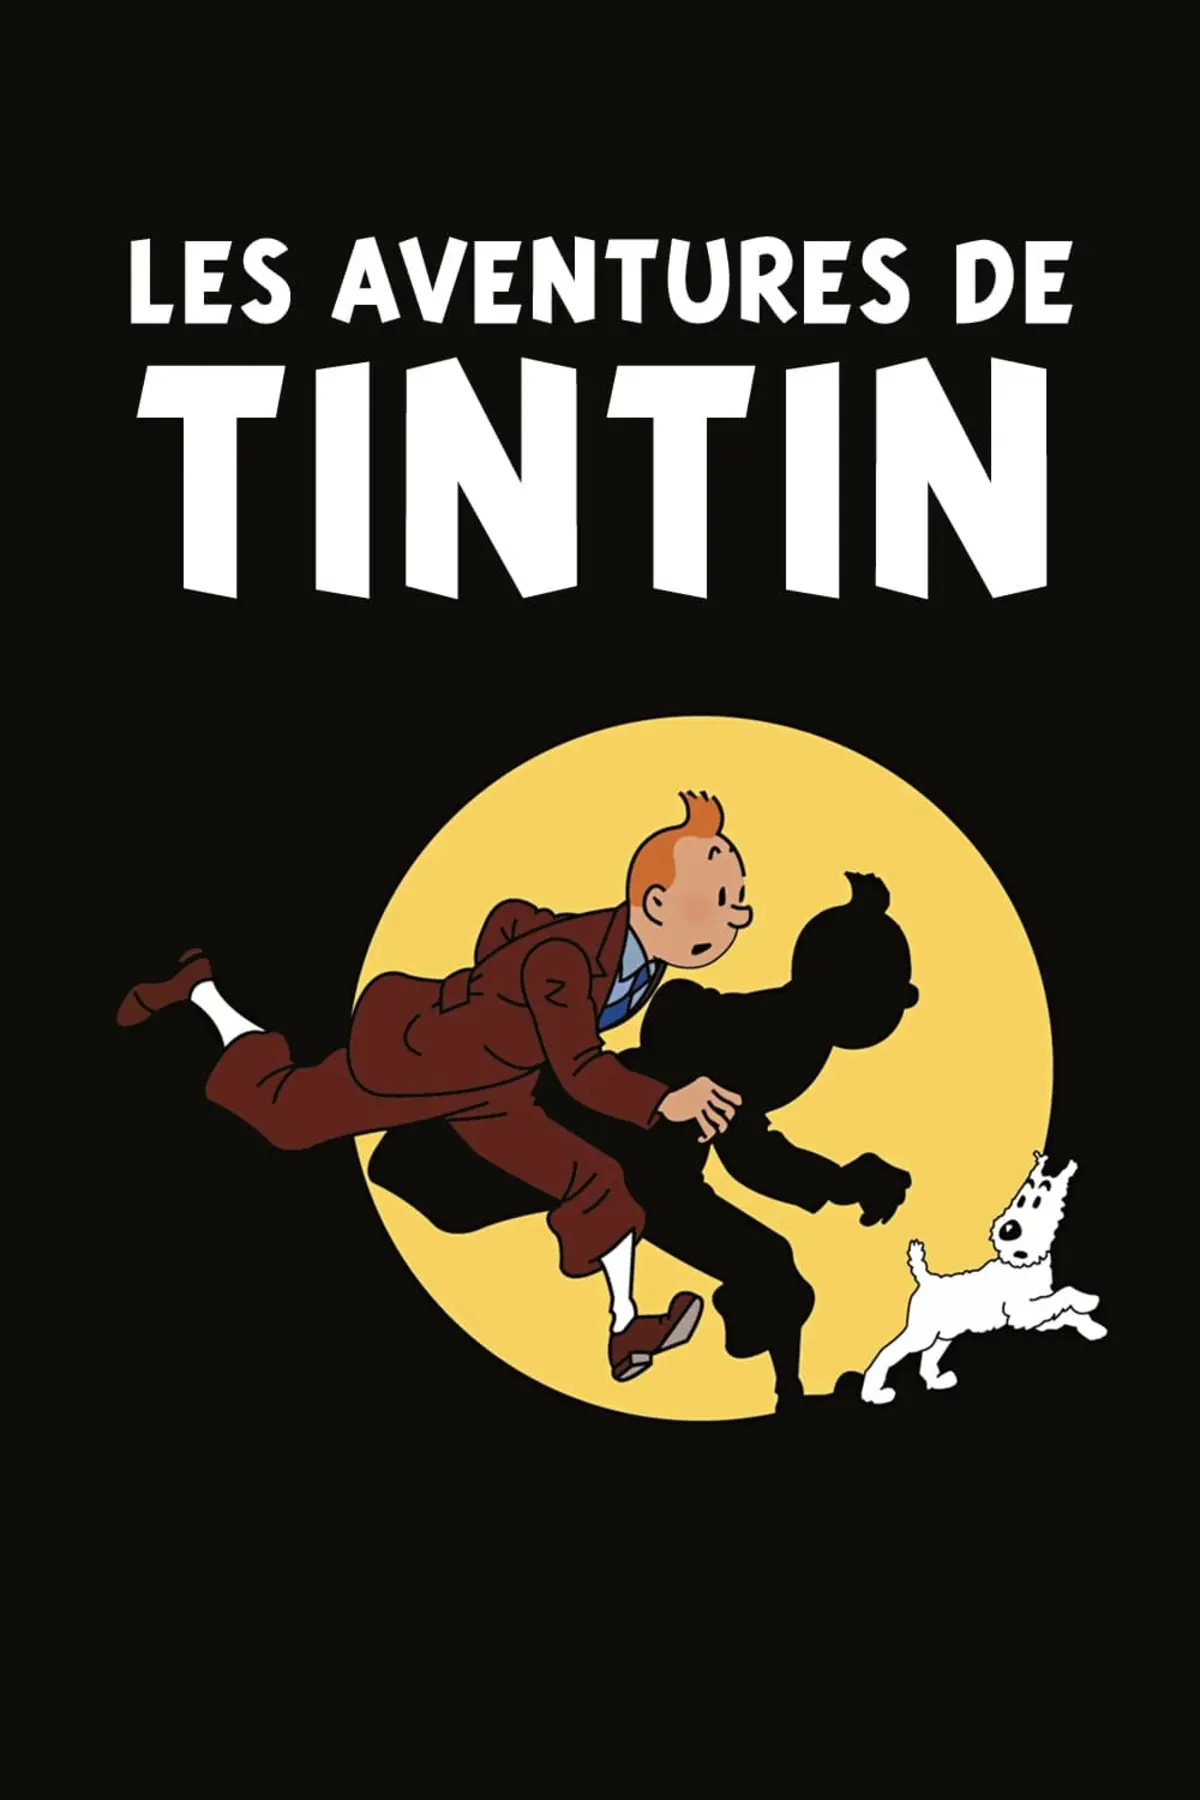 Les aventures de Tintin S01E03 Le secret de la licorne (1)